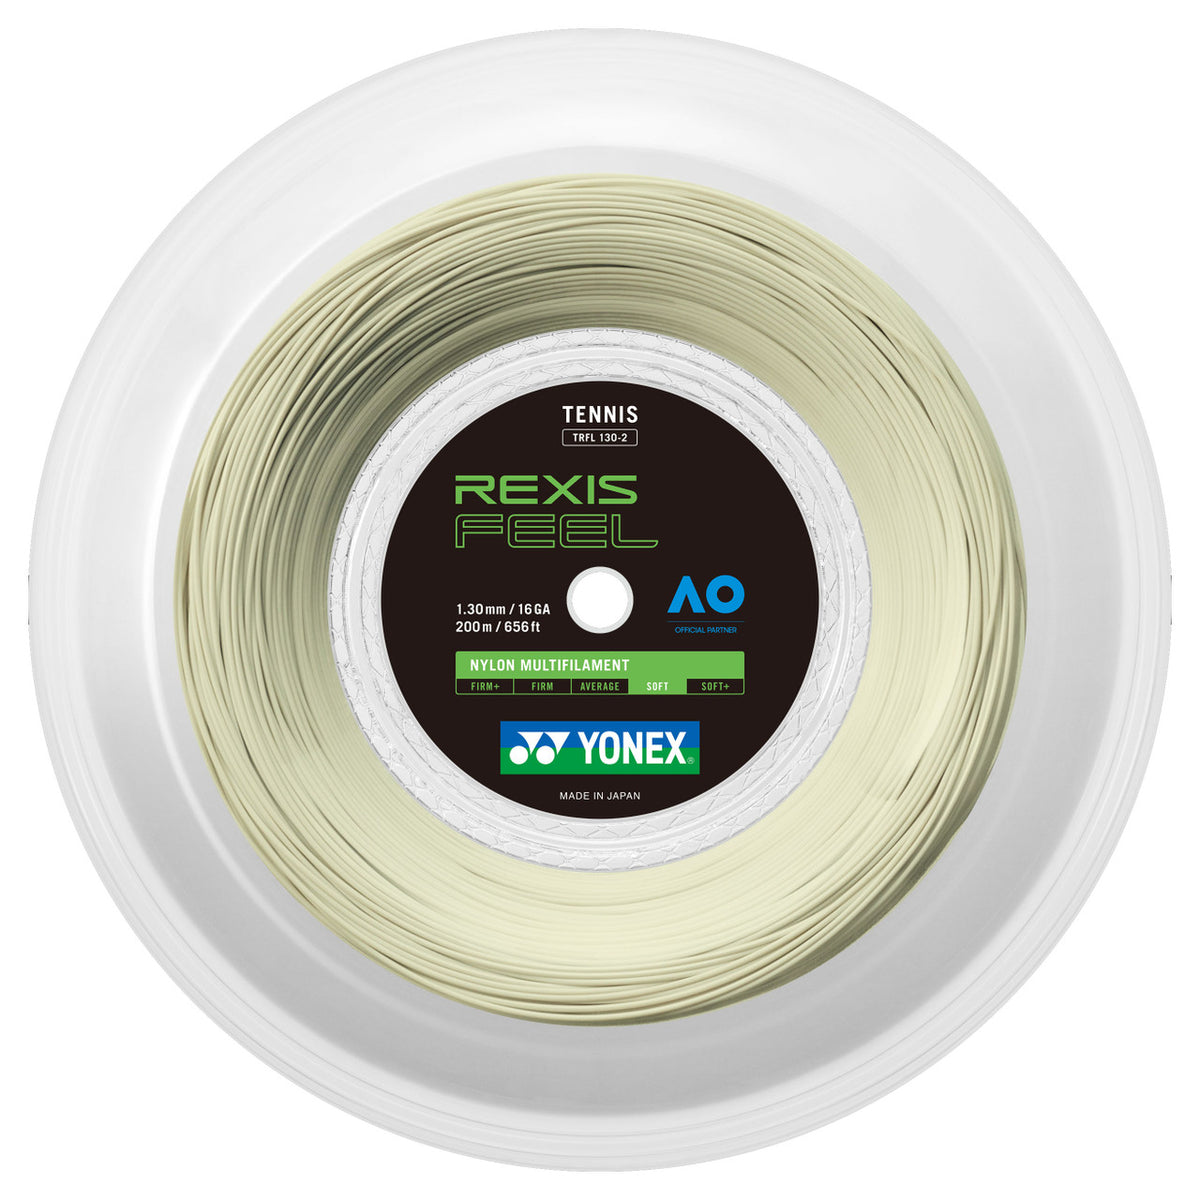 Yonex Rexis 1.30mm 200m Tennis String Off White